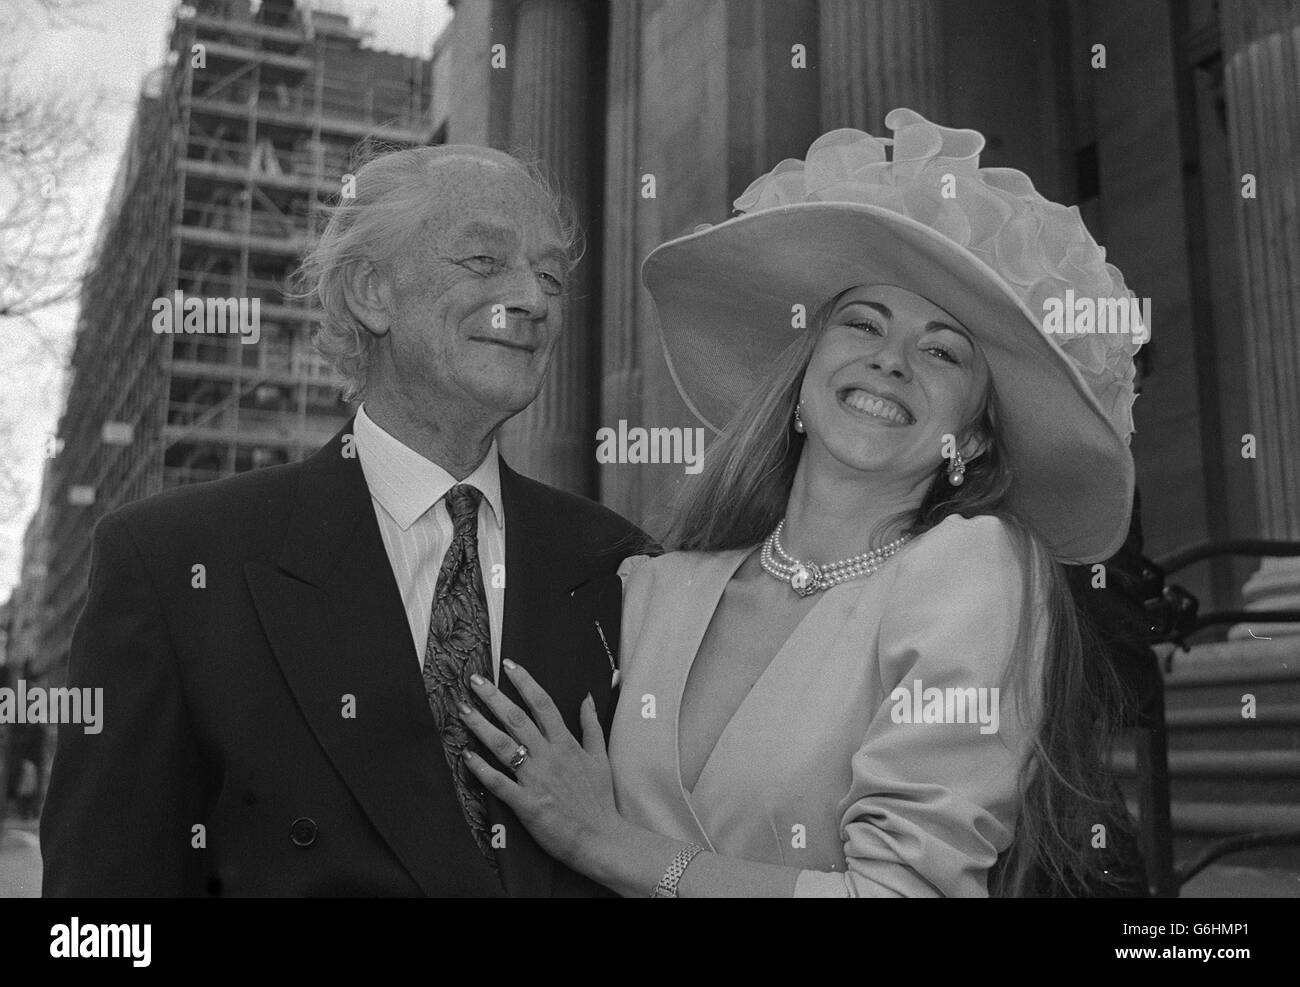 Sir Anthony Buck, de 61 años, diputado conservador de Colchester North con su novia, la diseñadora de moda española Bienvenida Pérez-Blance, de 31 años, después de su matrimonio en la oficina de registro de St Marylebone en Londres. Foto de stock